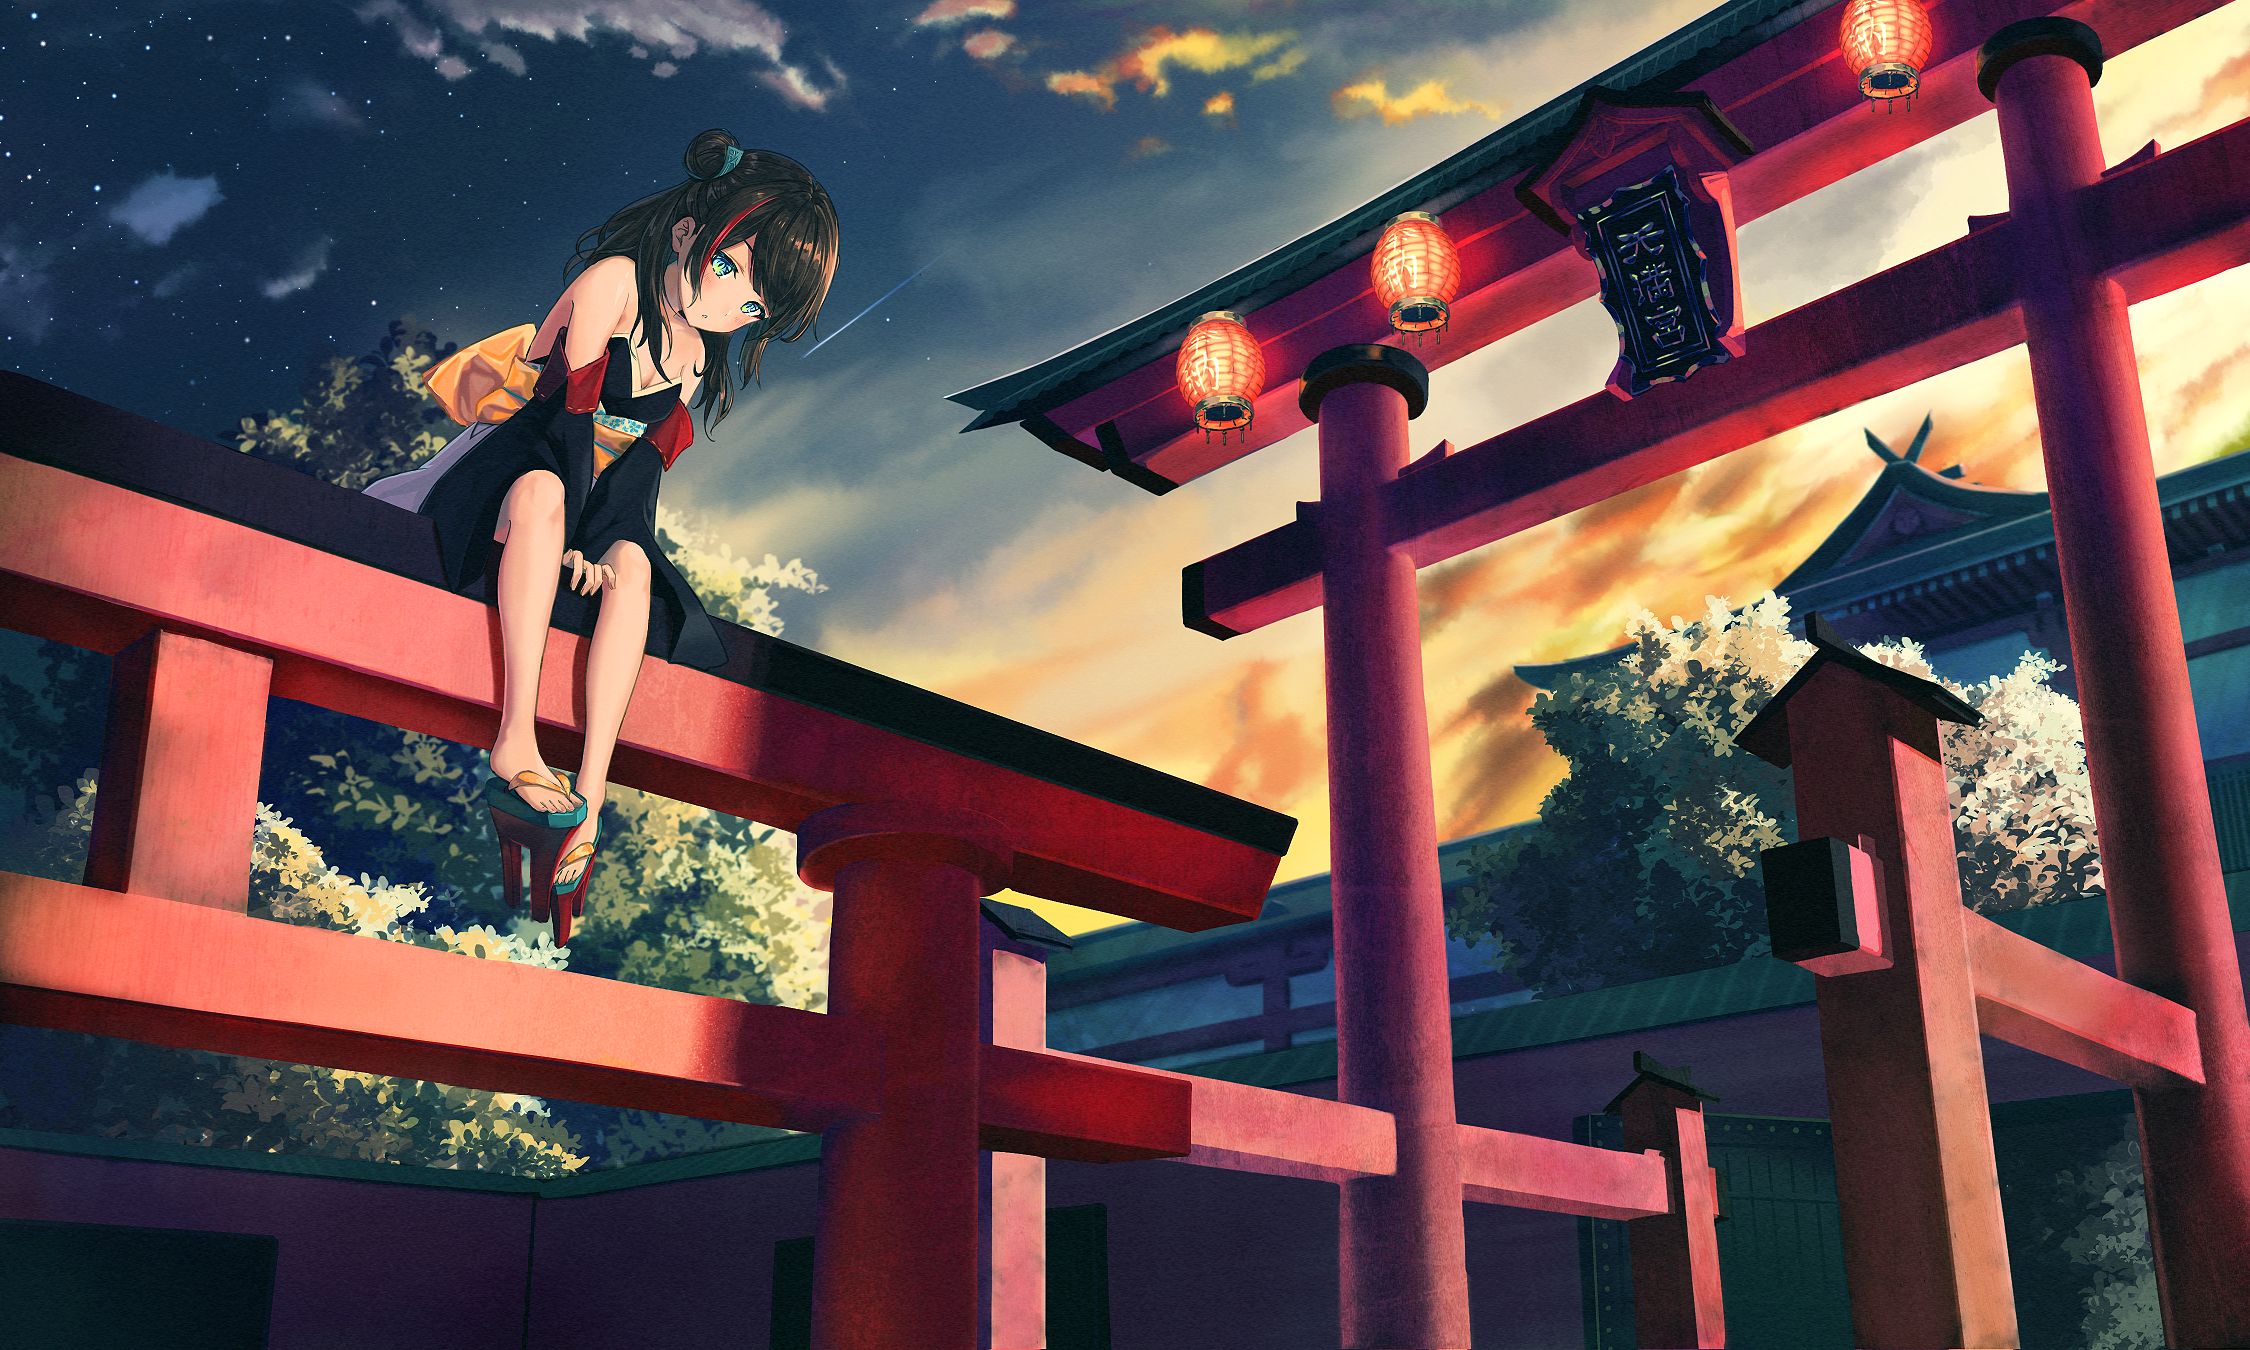 Download Torii Gate Anime Girl Wallpaper